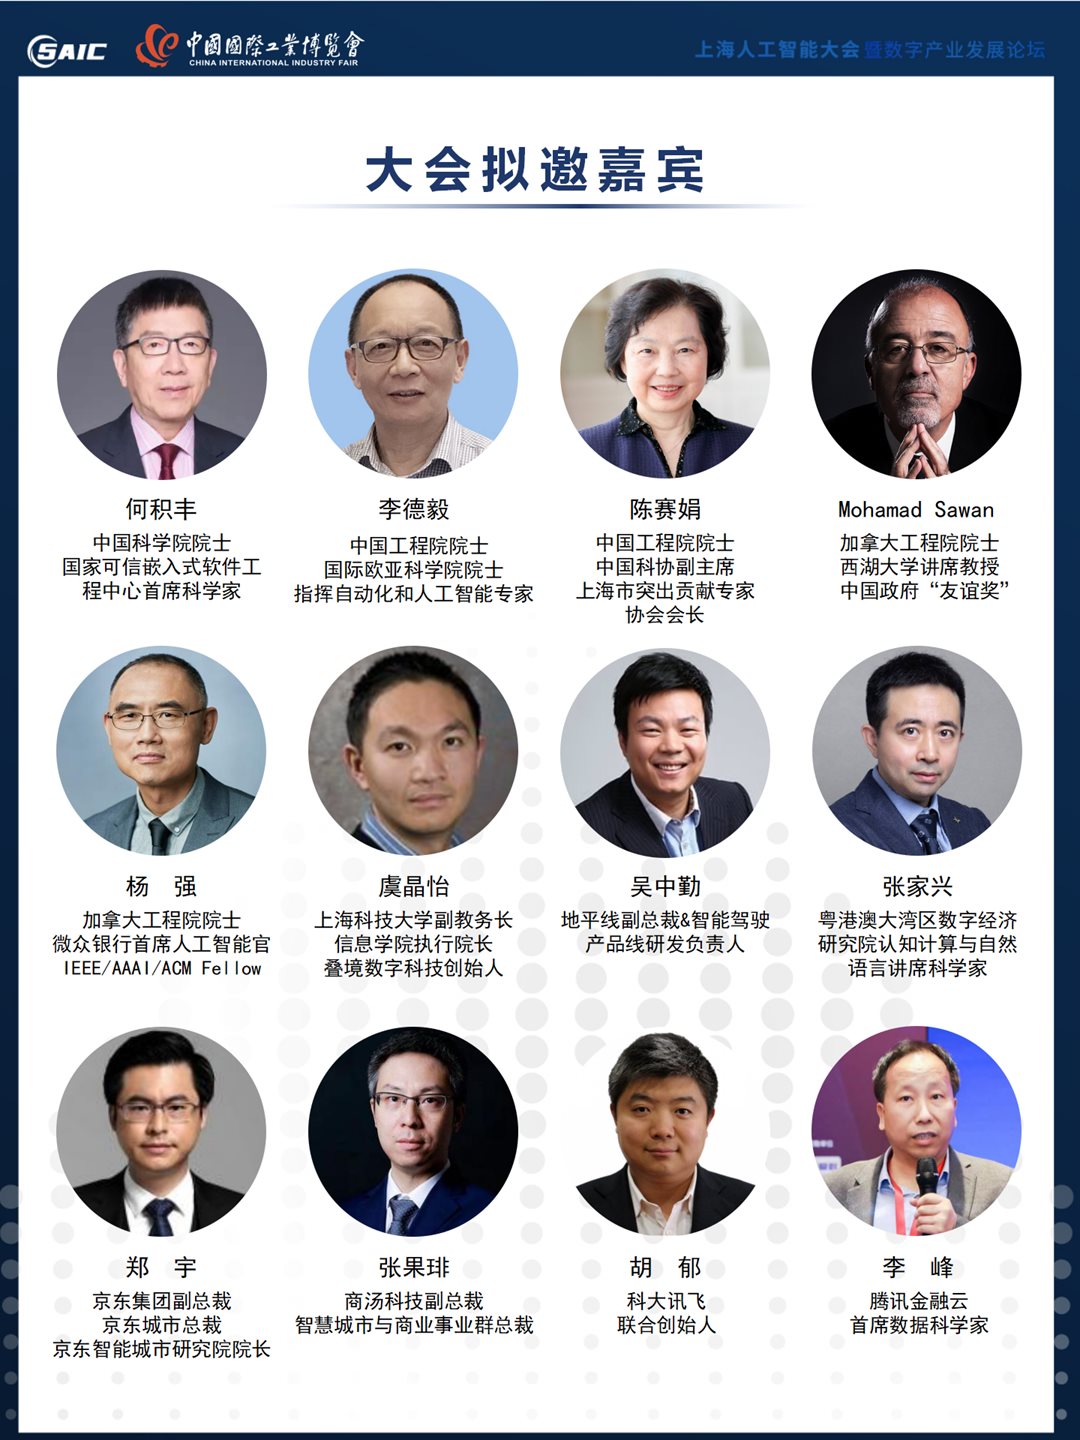 8th上海AI大会 大会合作方案 0517（对外）_04.png